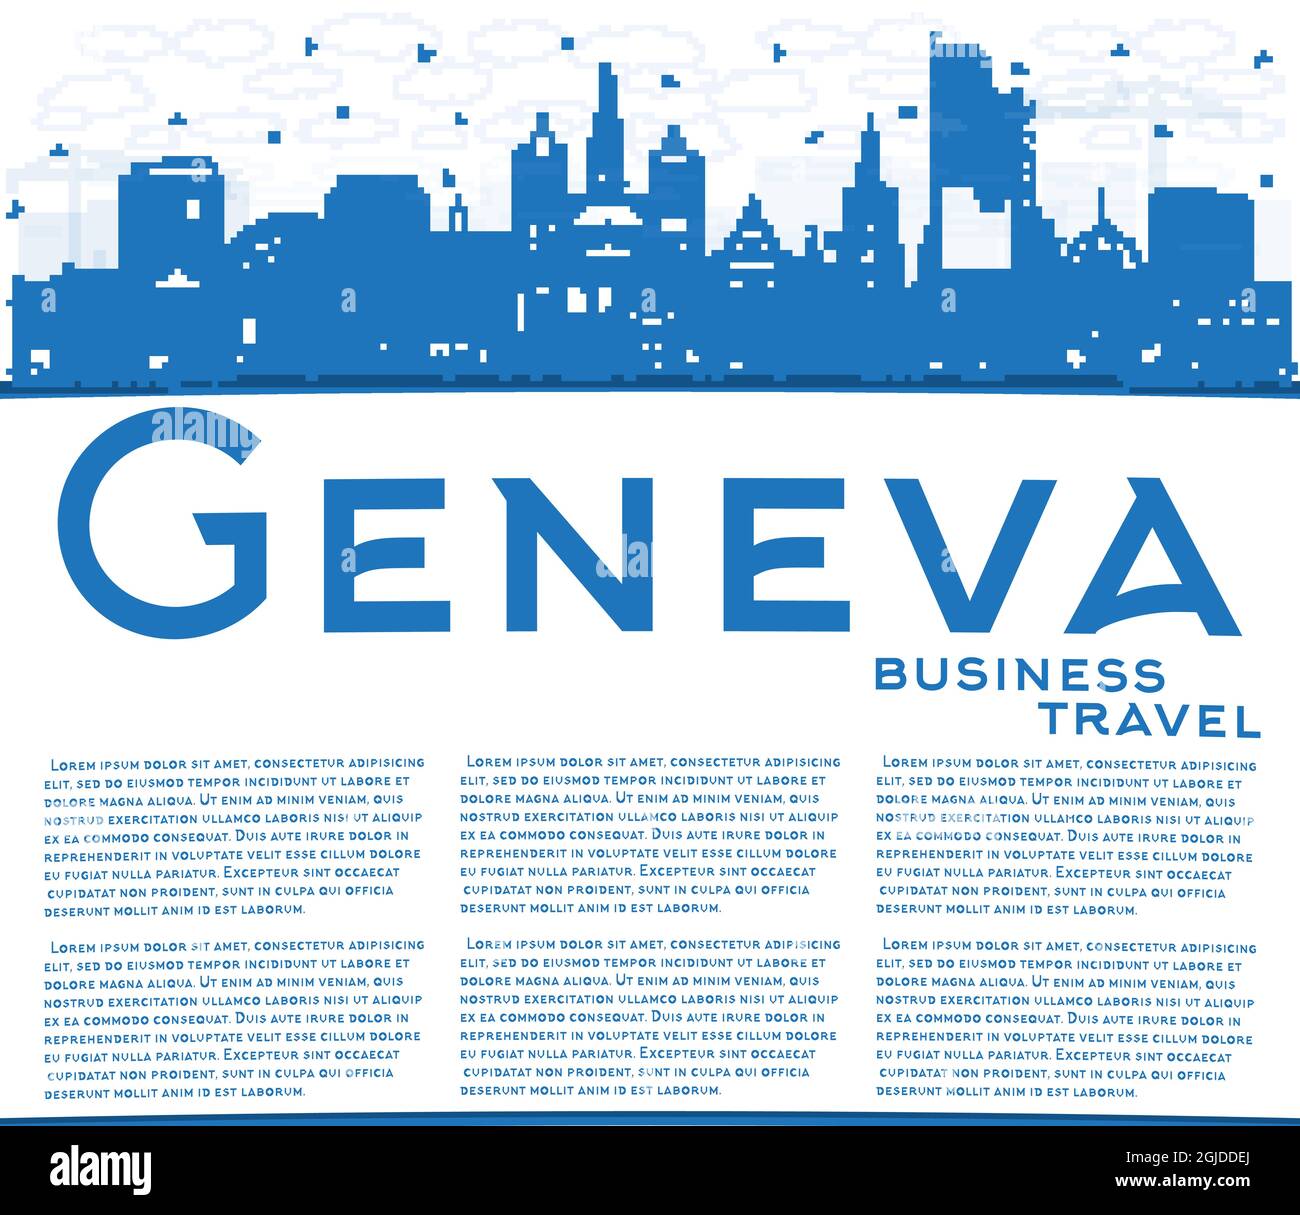 Skizzieren Sie die Skyline der Stadt Genf Schweiz mit blauen Gebäuden und Kopierflächen. Vektorgrafik. Genfer Stadtbild mit Wahrzeichen. Stock Vektor